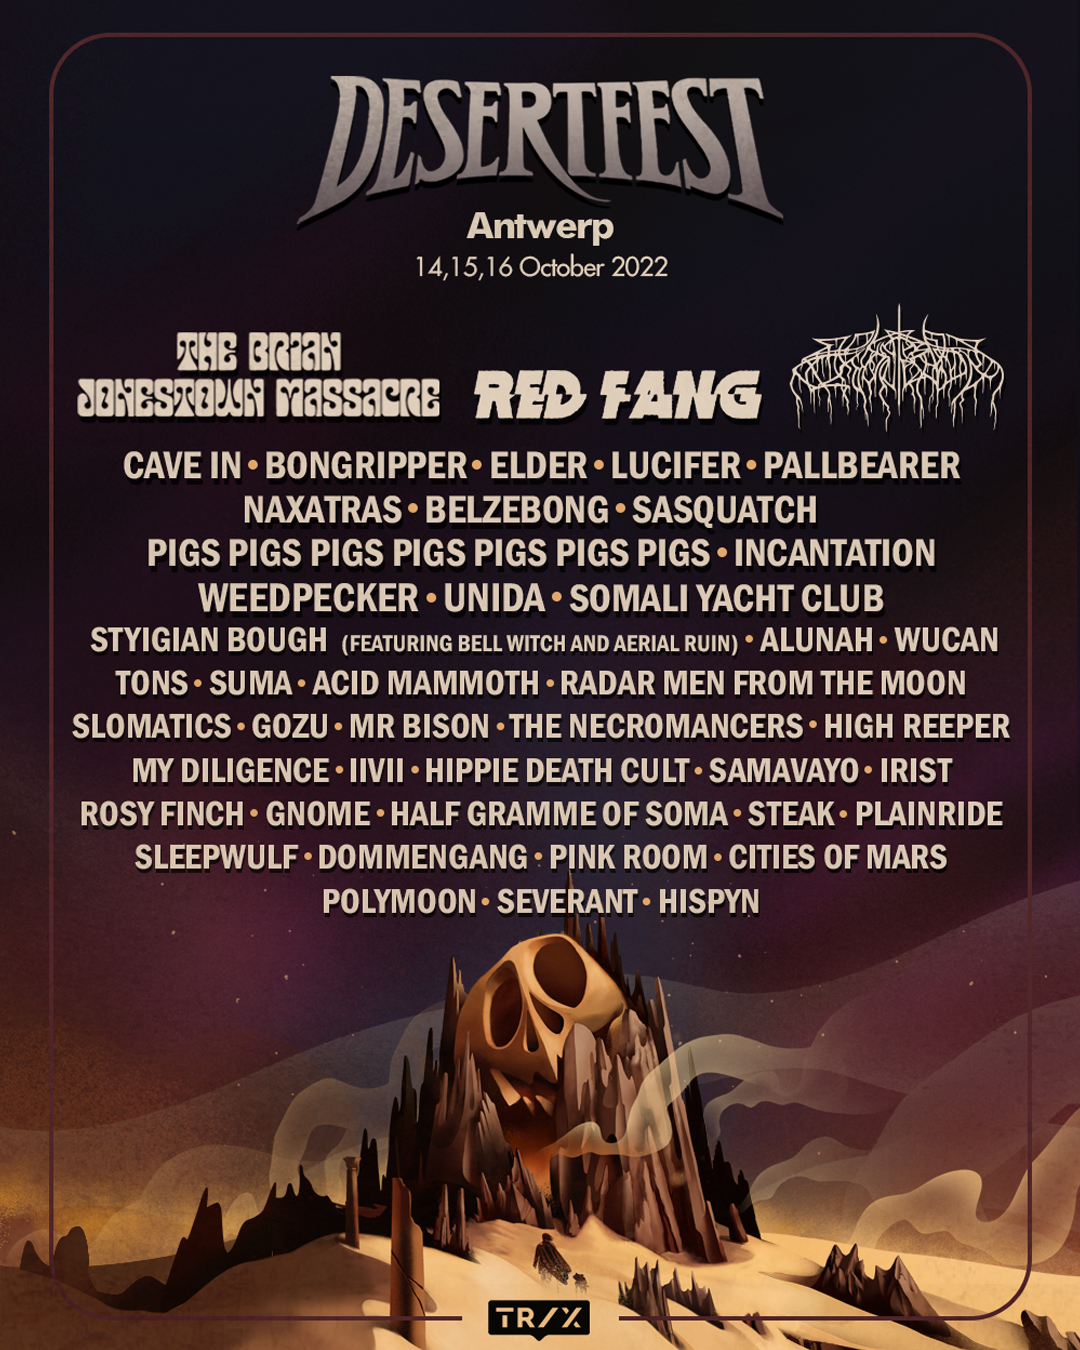 Desertfest Antwerp 2022 full lineup